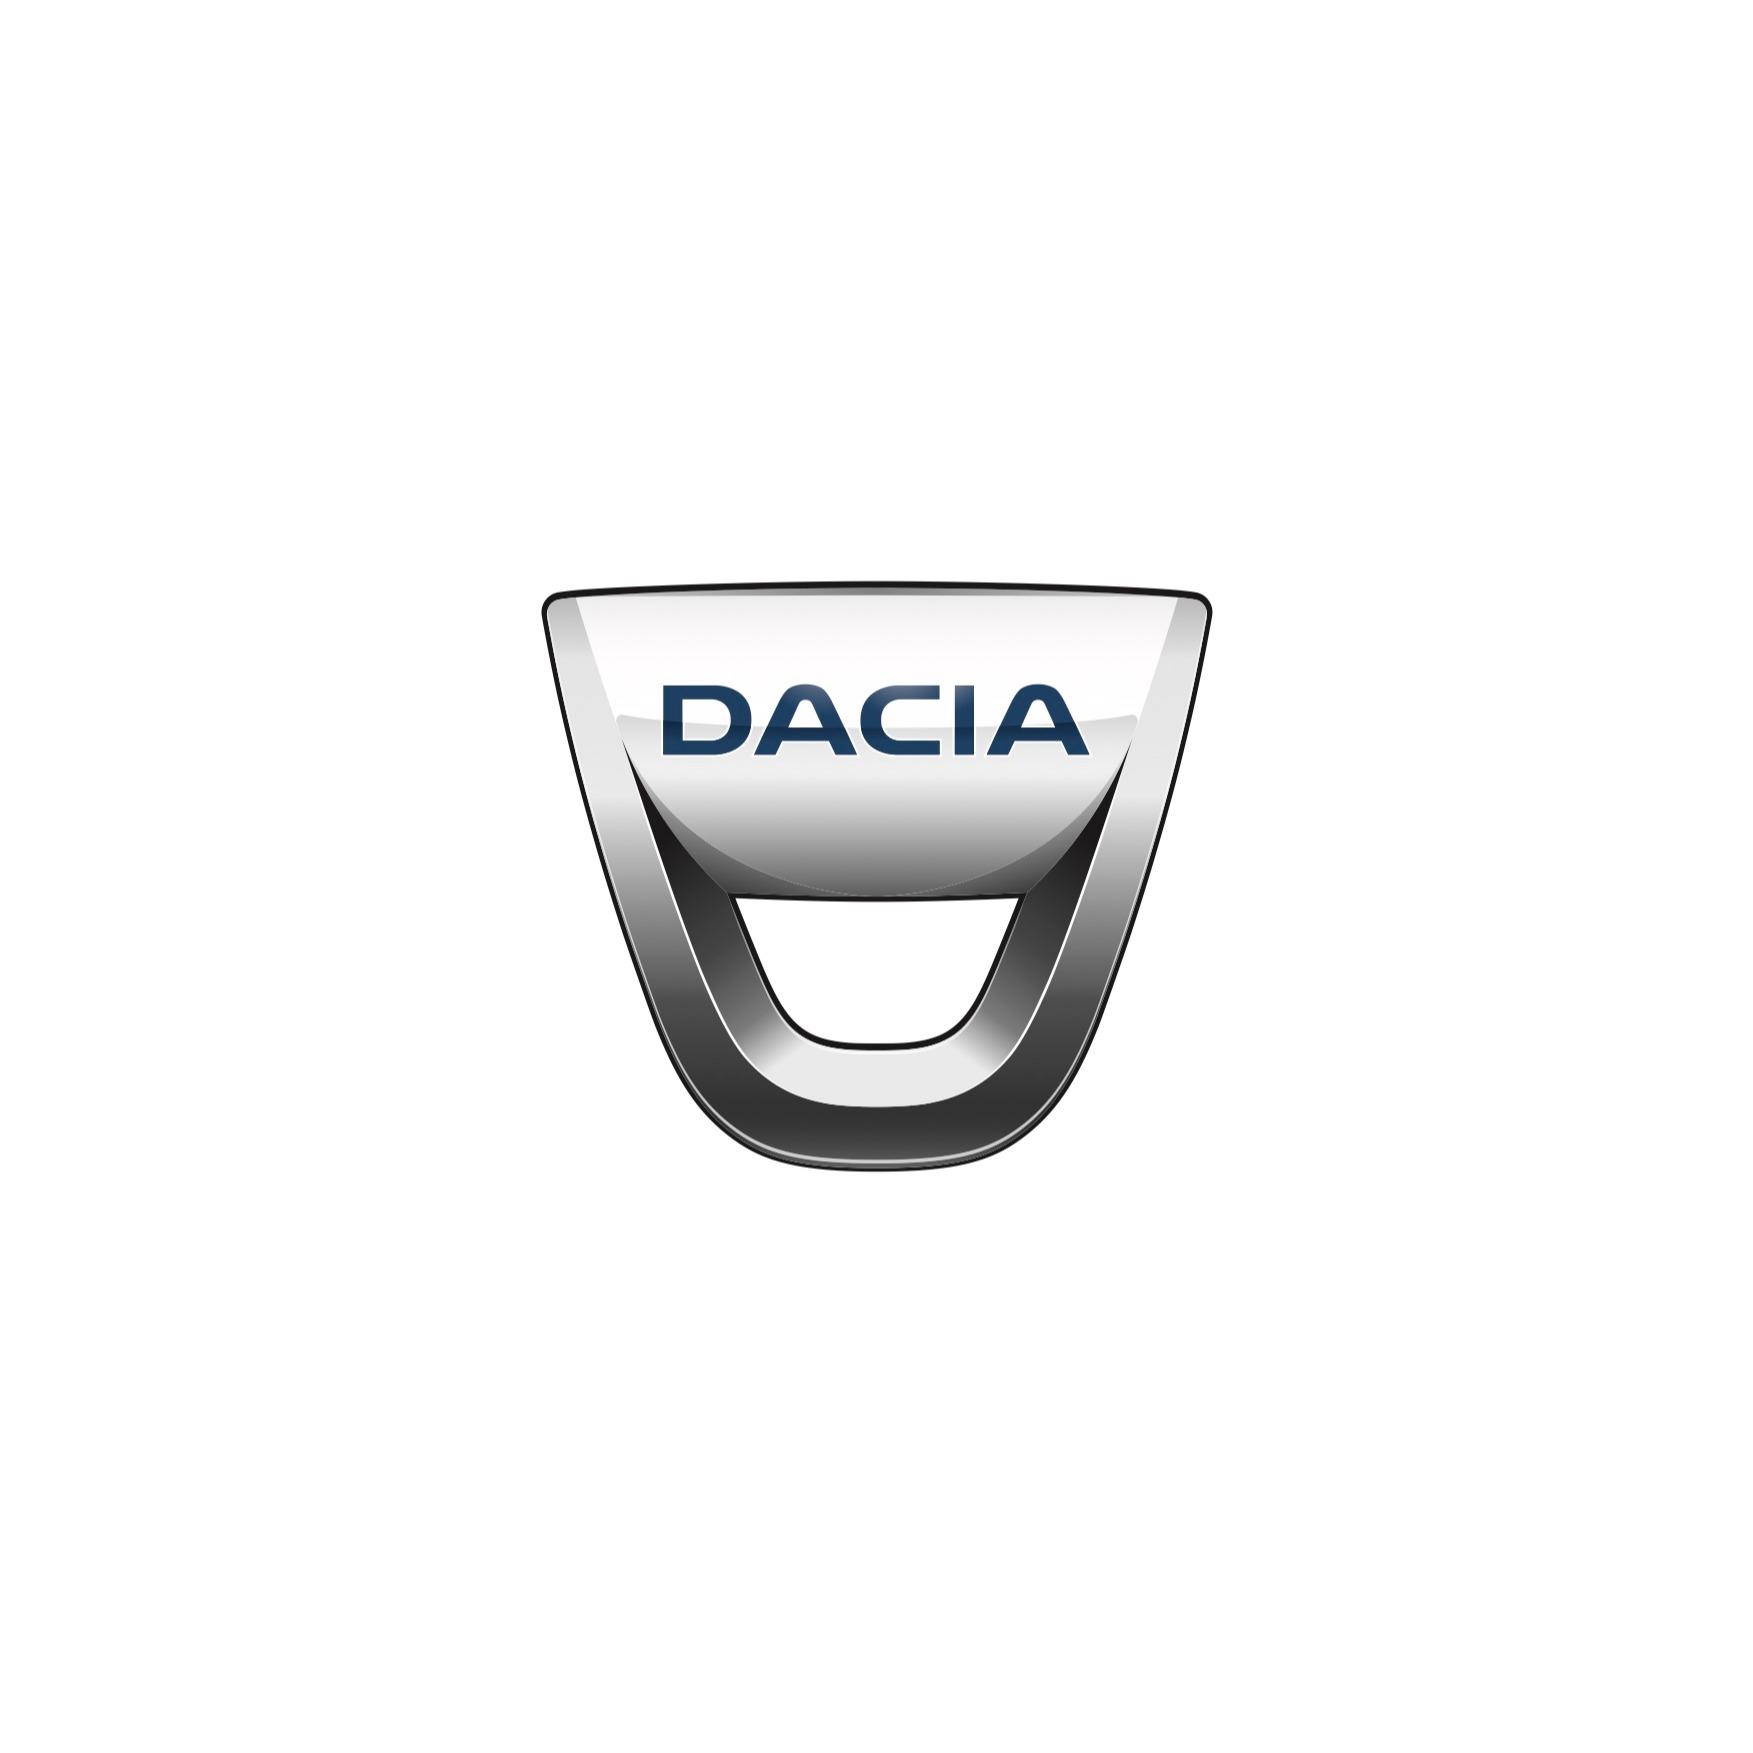 Dacia Le Mans Le Mans